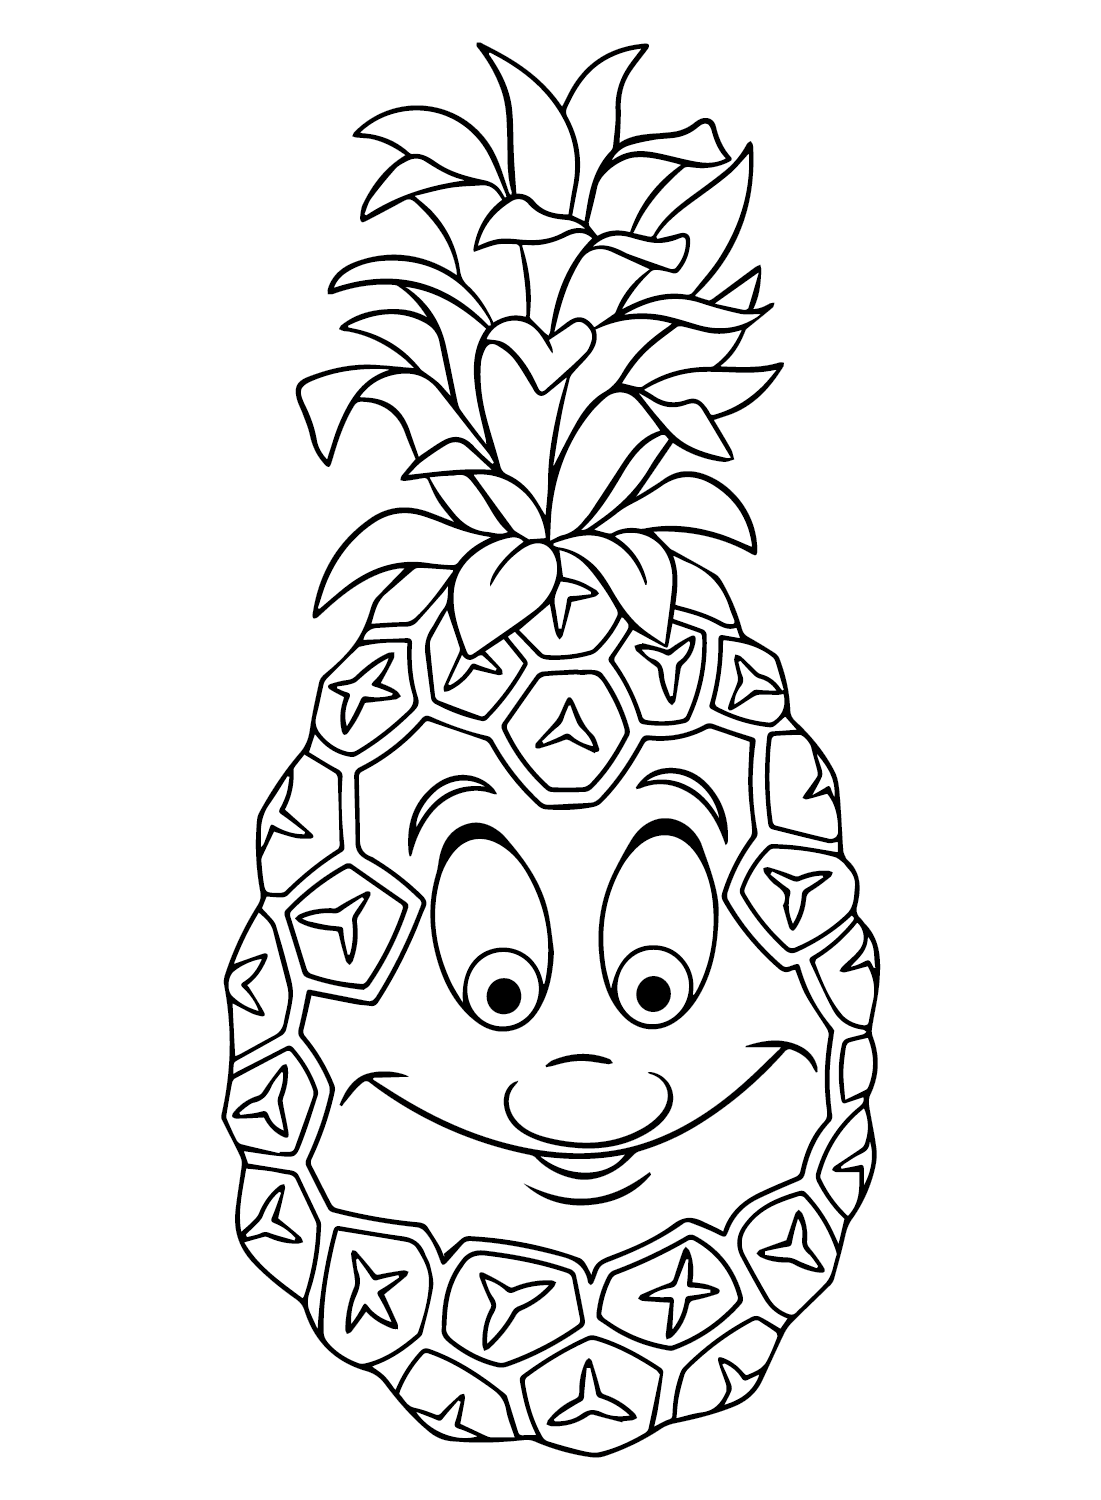 菠萝卡通菠萝